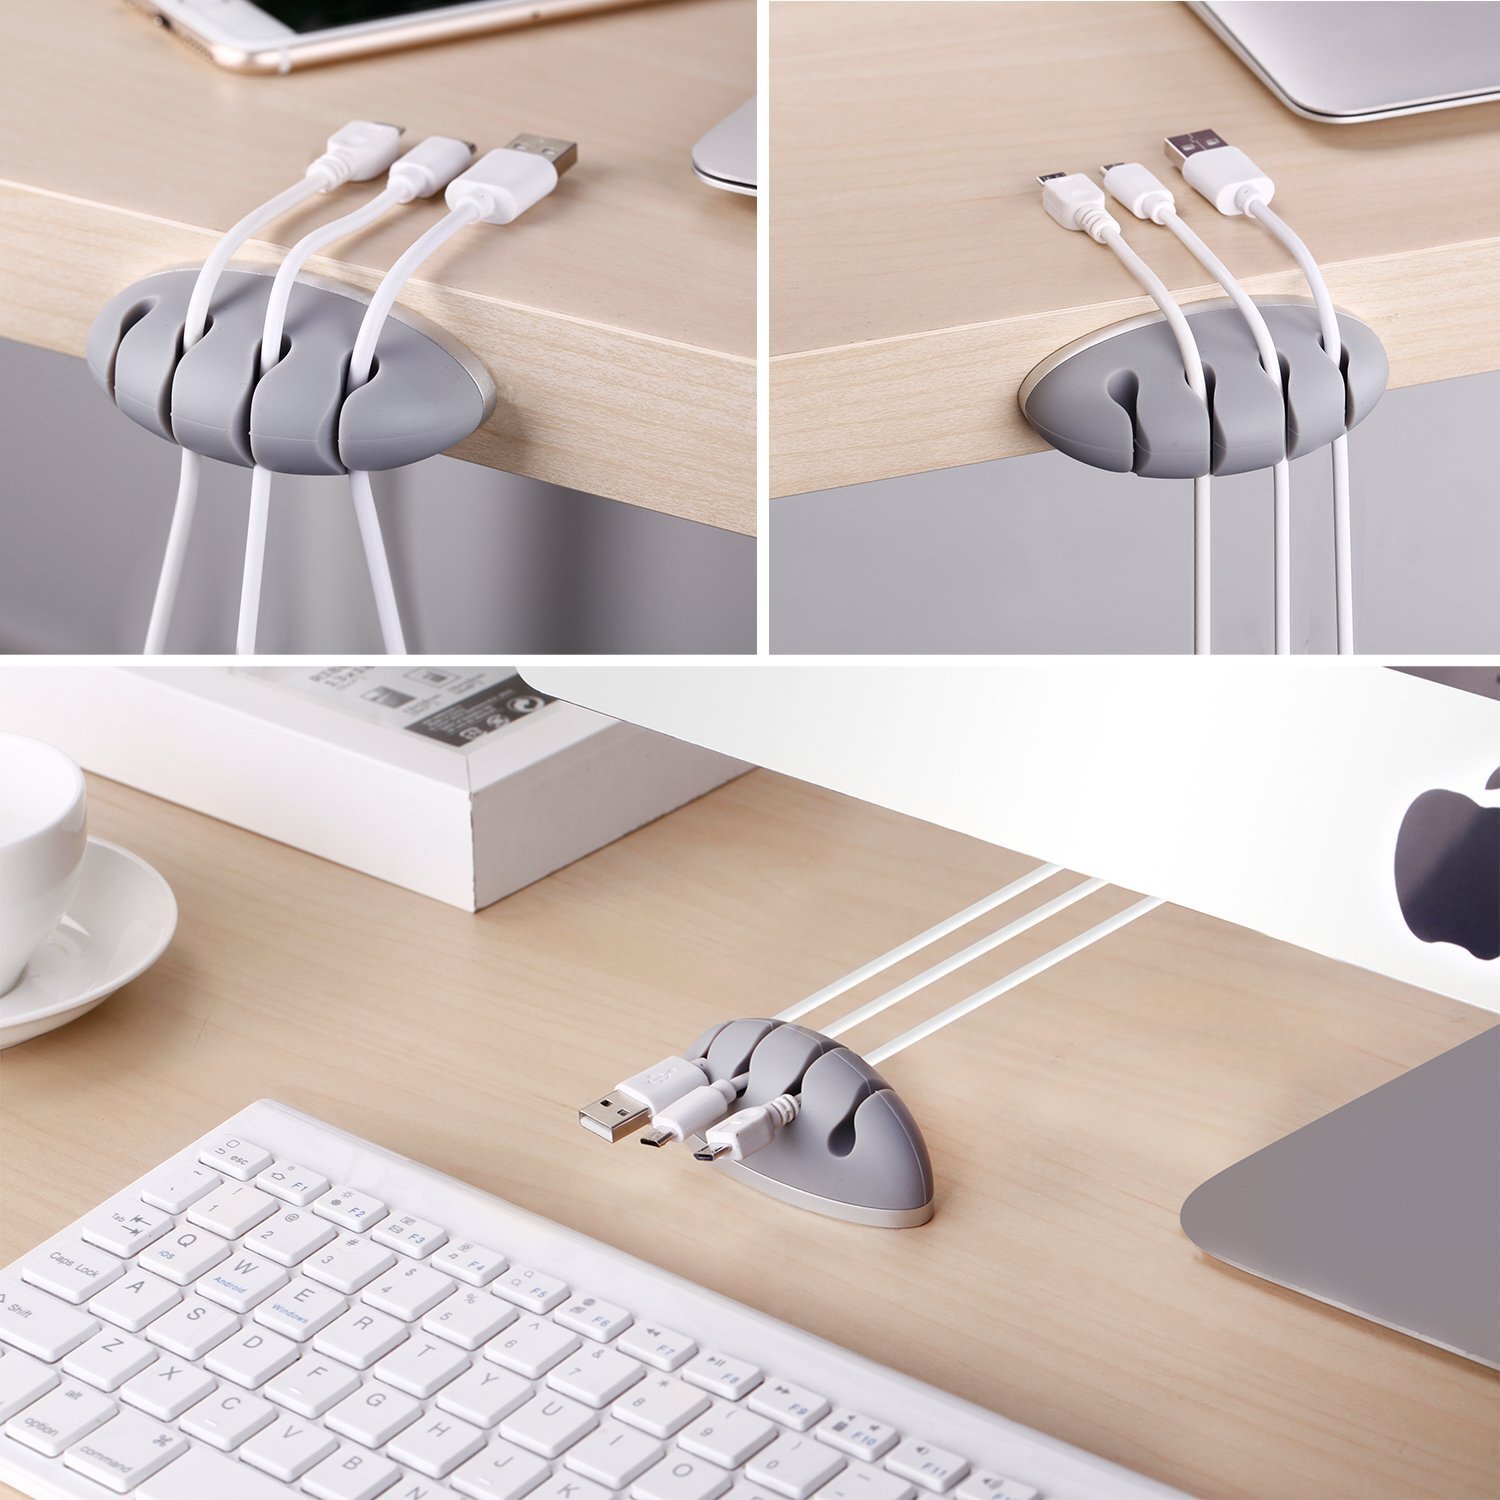 ✓ El truco definitivo para organizar los cables en tu escritorio